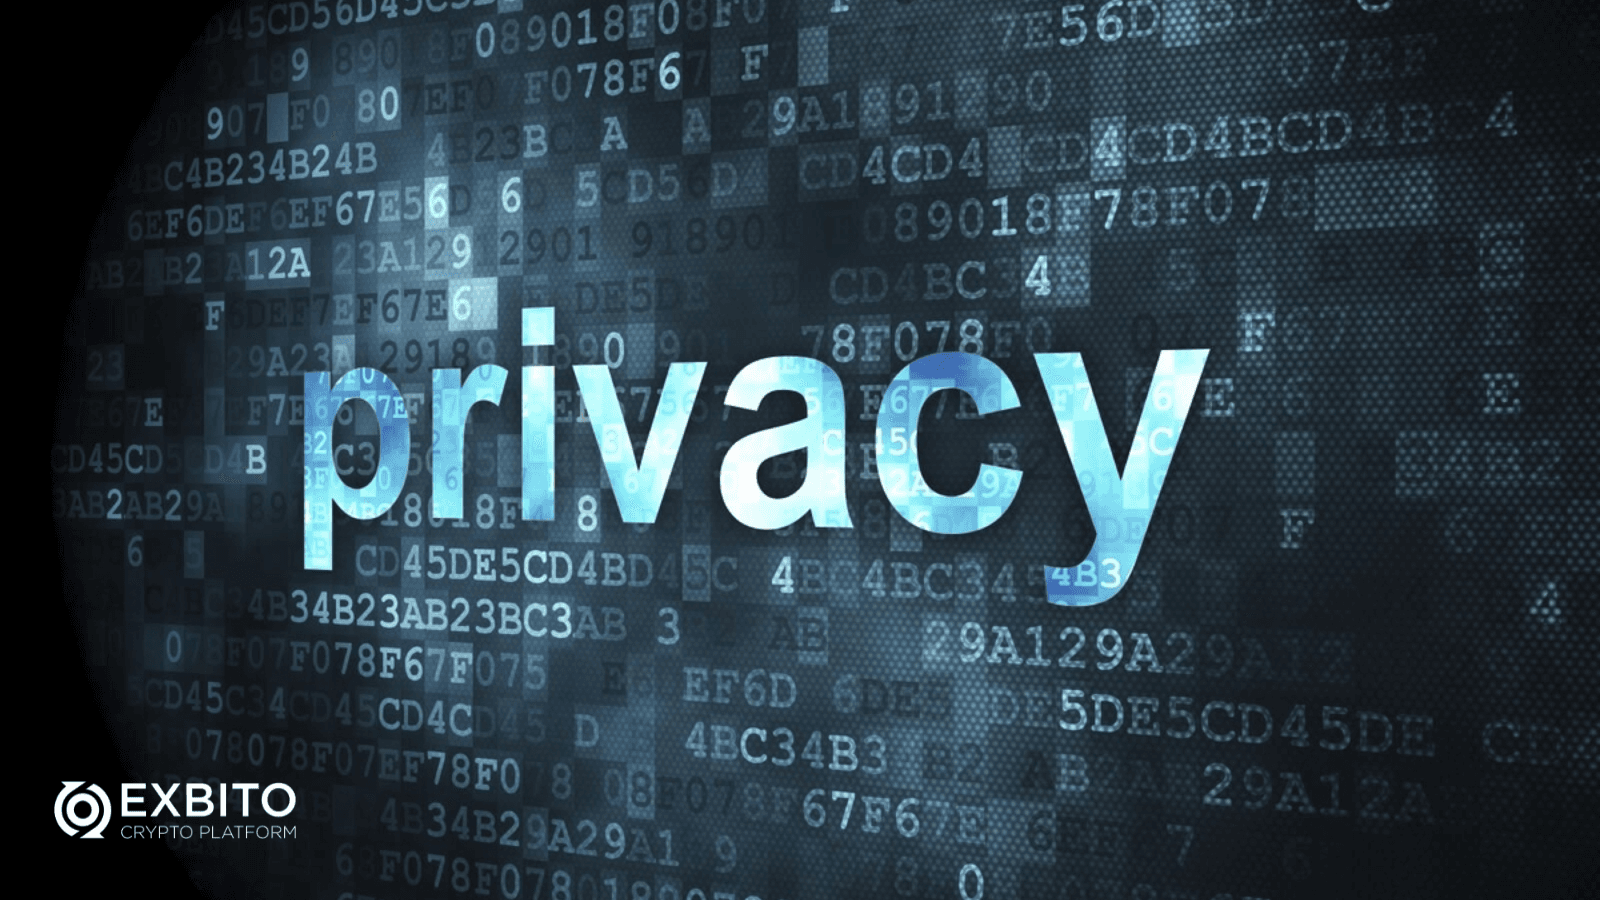 افزایش حریم خصوصی در اینترنت (Enhanced Privacy On The Internet)